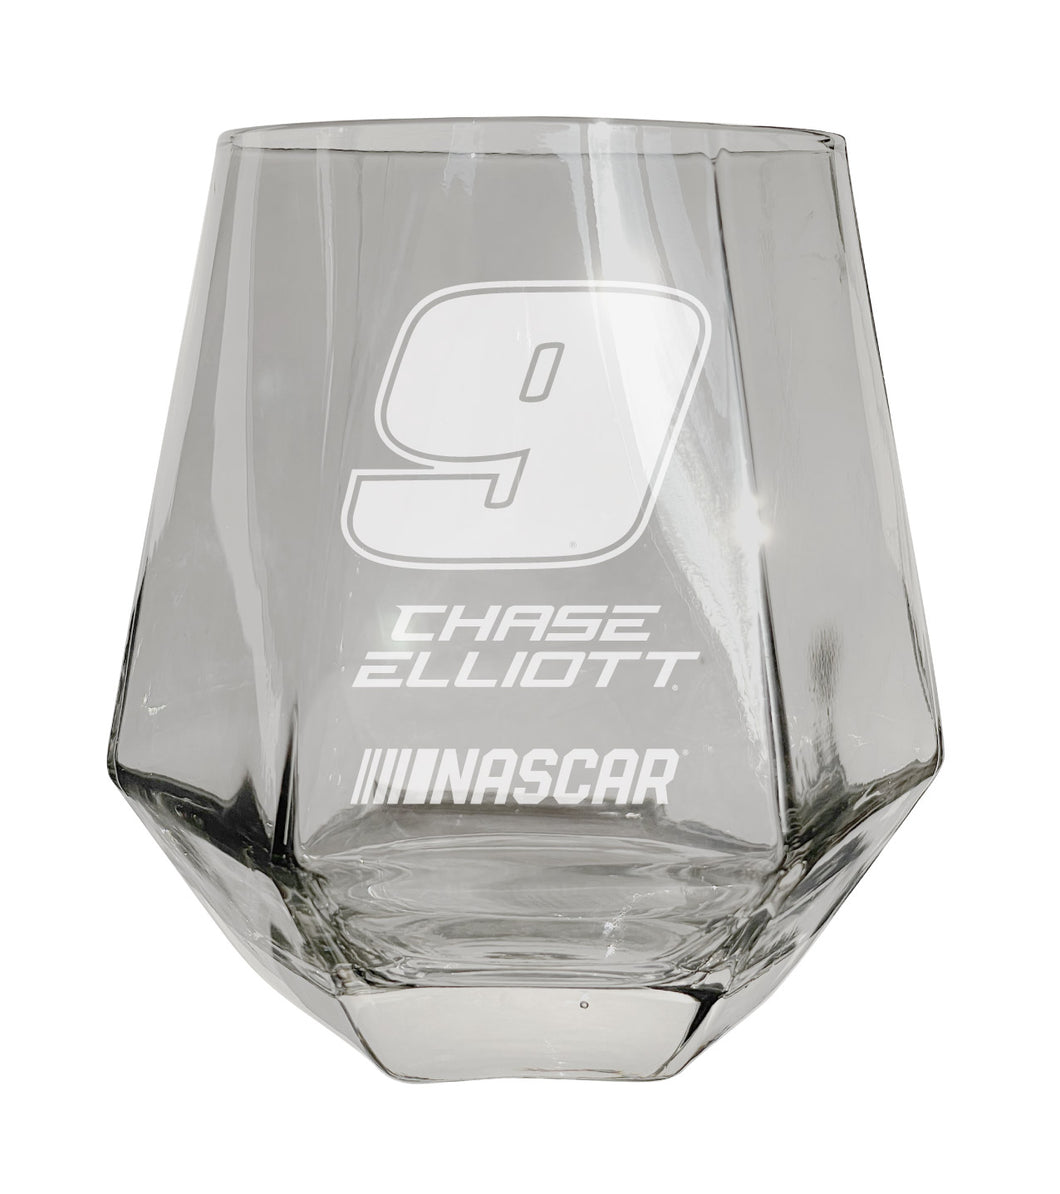 #9 Chase Elliott Officially Licensed 10 oz Engraved Diamond Wine Glass